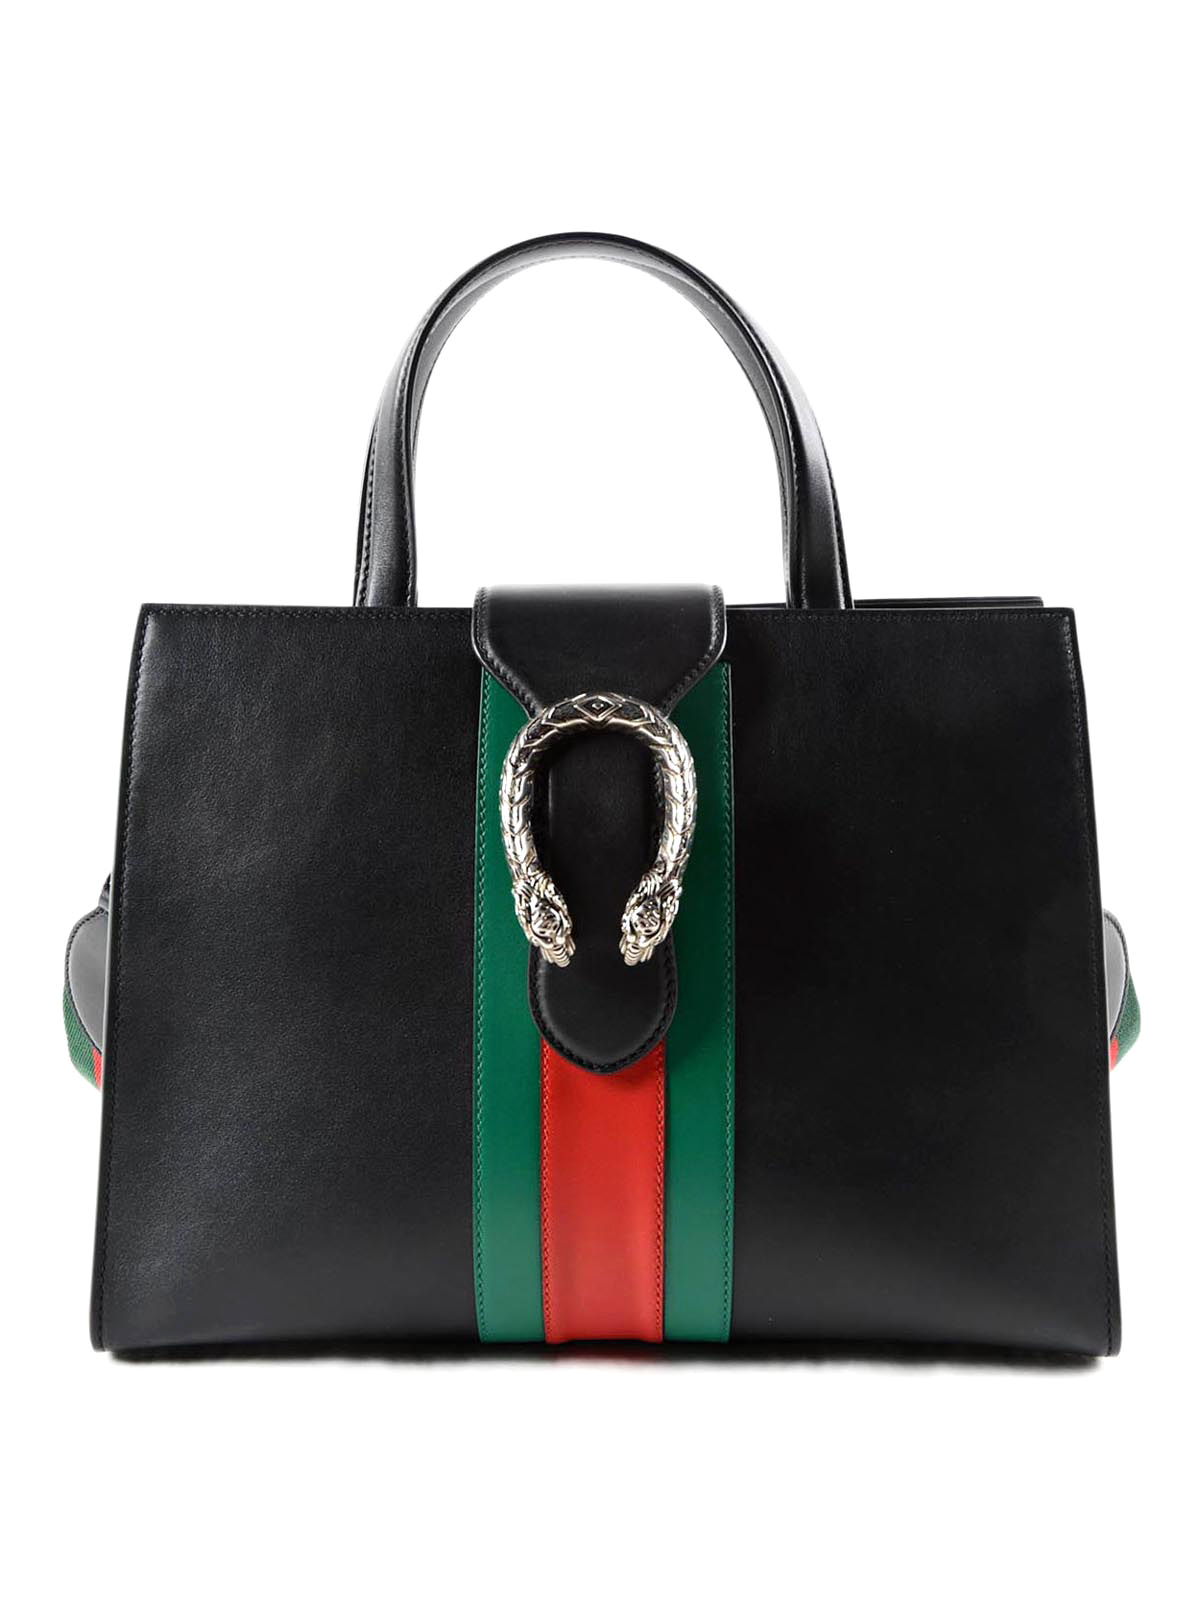 Gucci Totes Handbags | IQS Executive